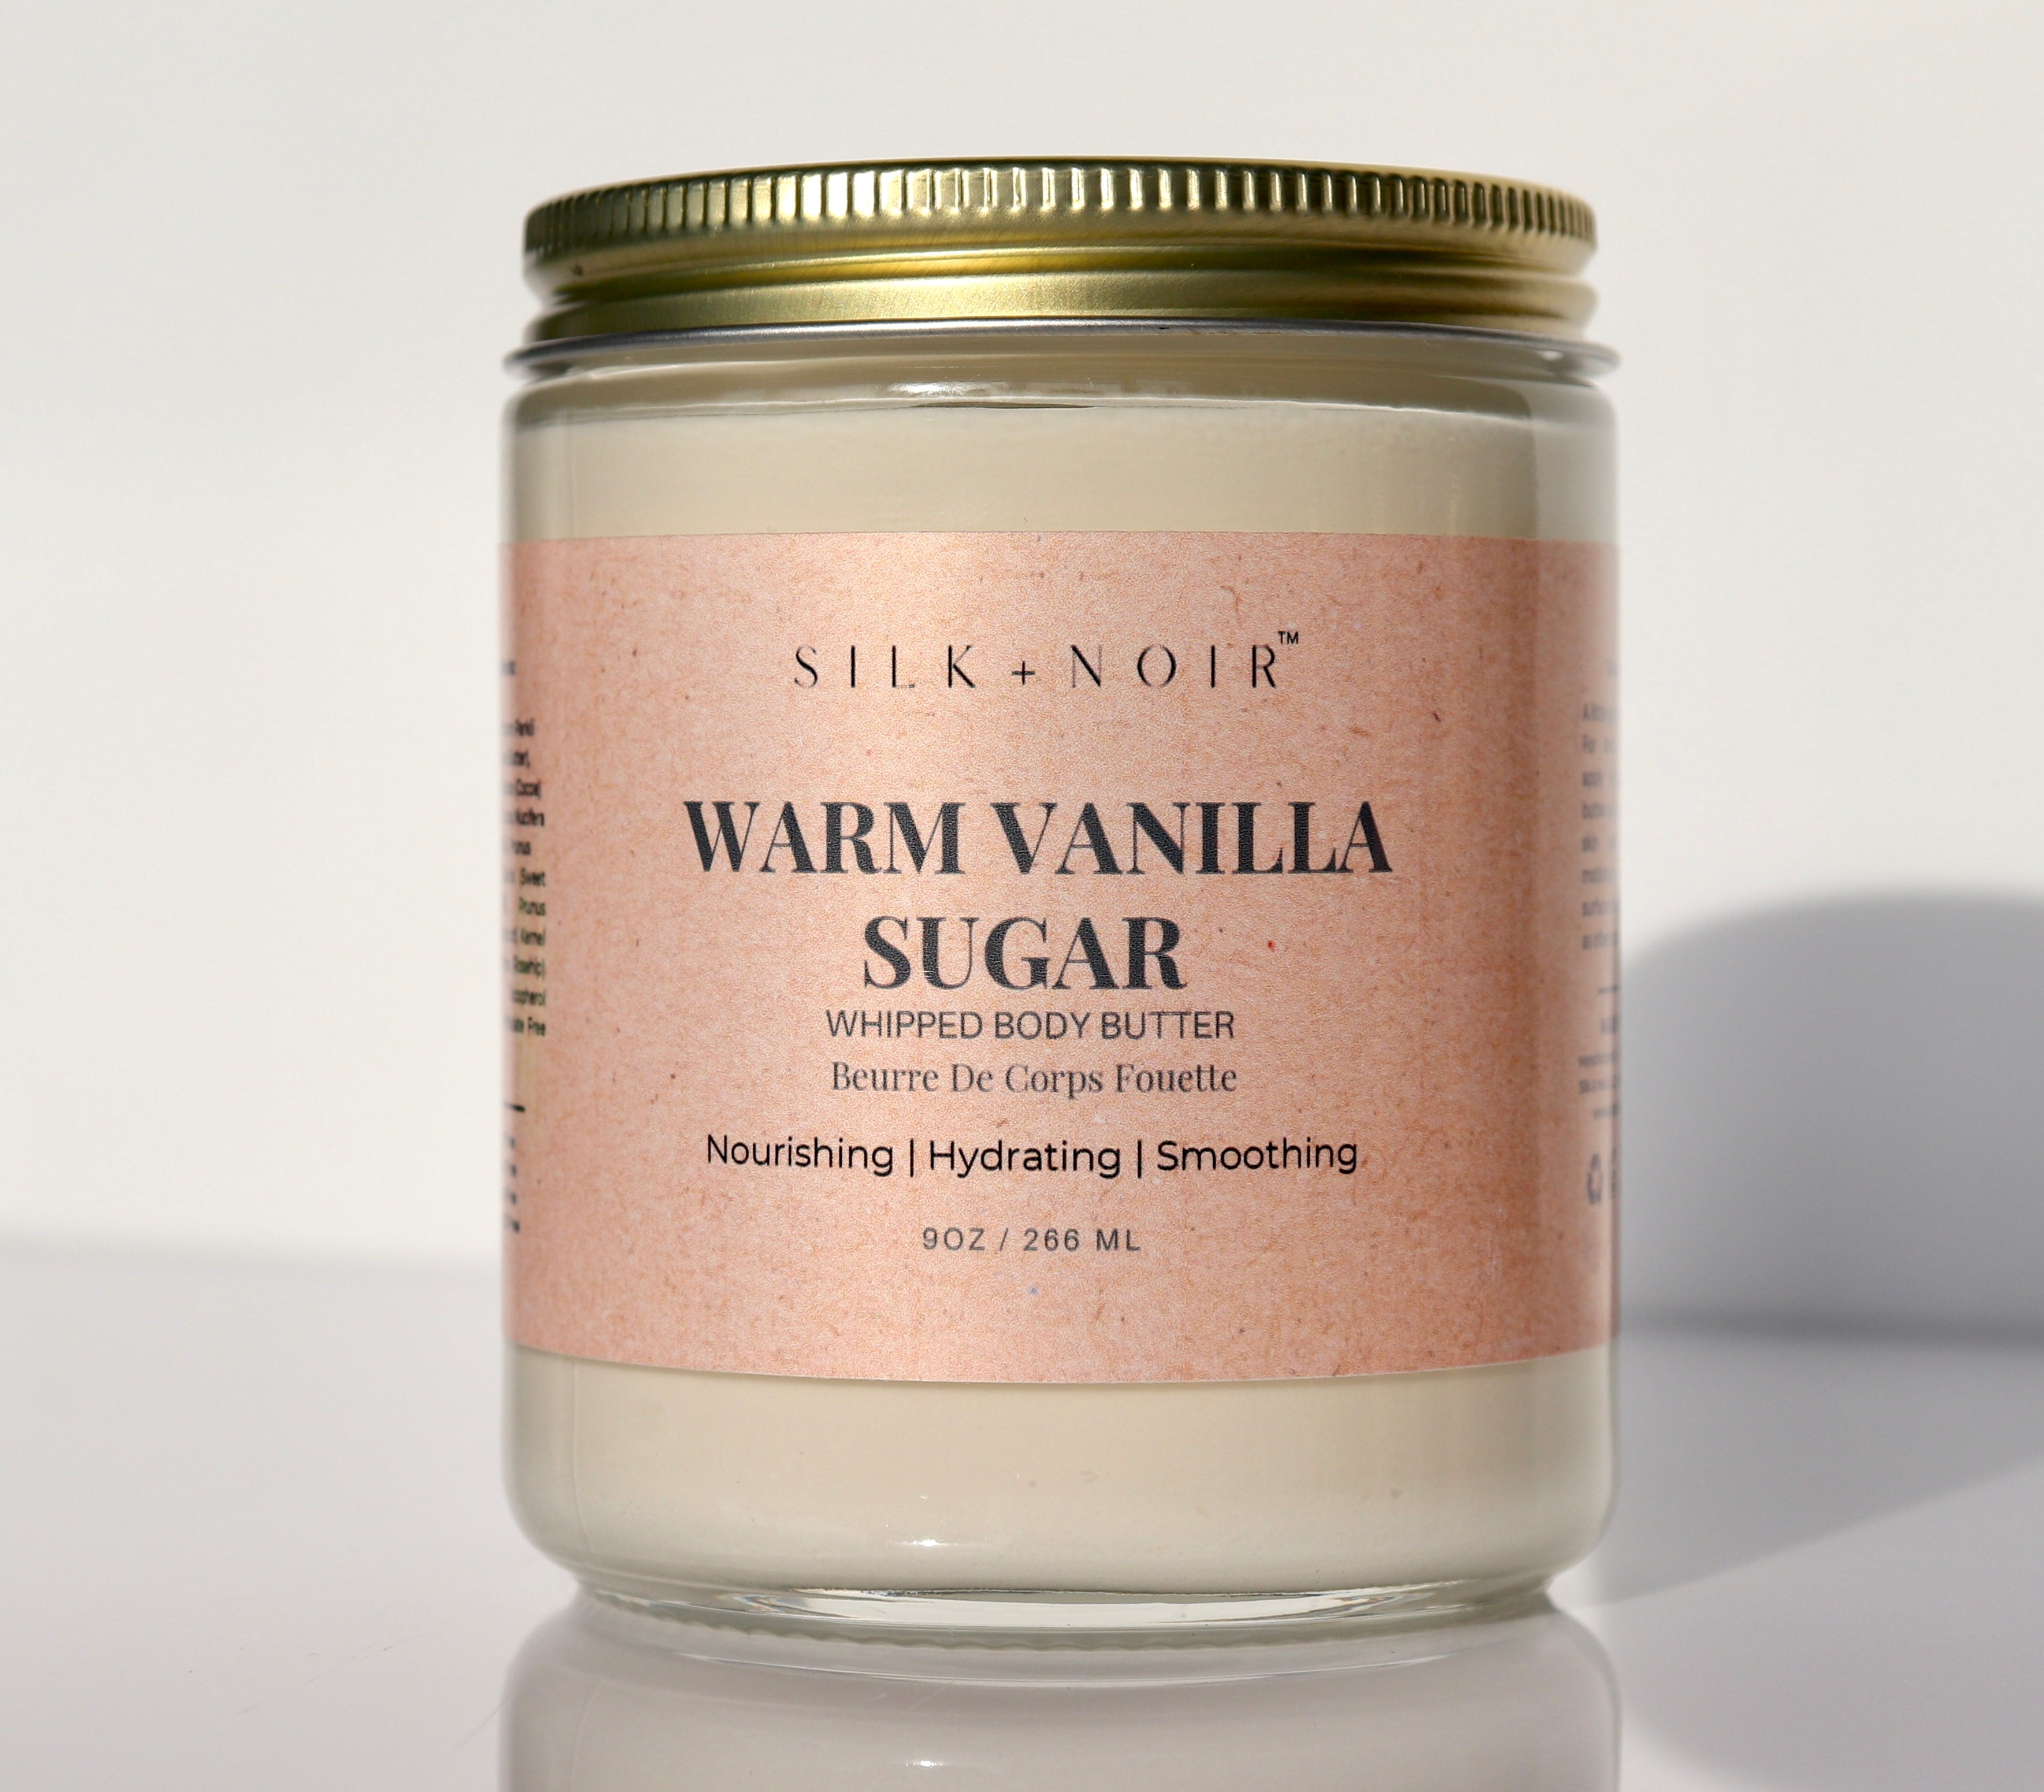 It smells like heaven 🤤 @Silk + Noir #bodyoilsforskin #bodyoil #silka, Vanilla Body Oil